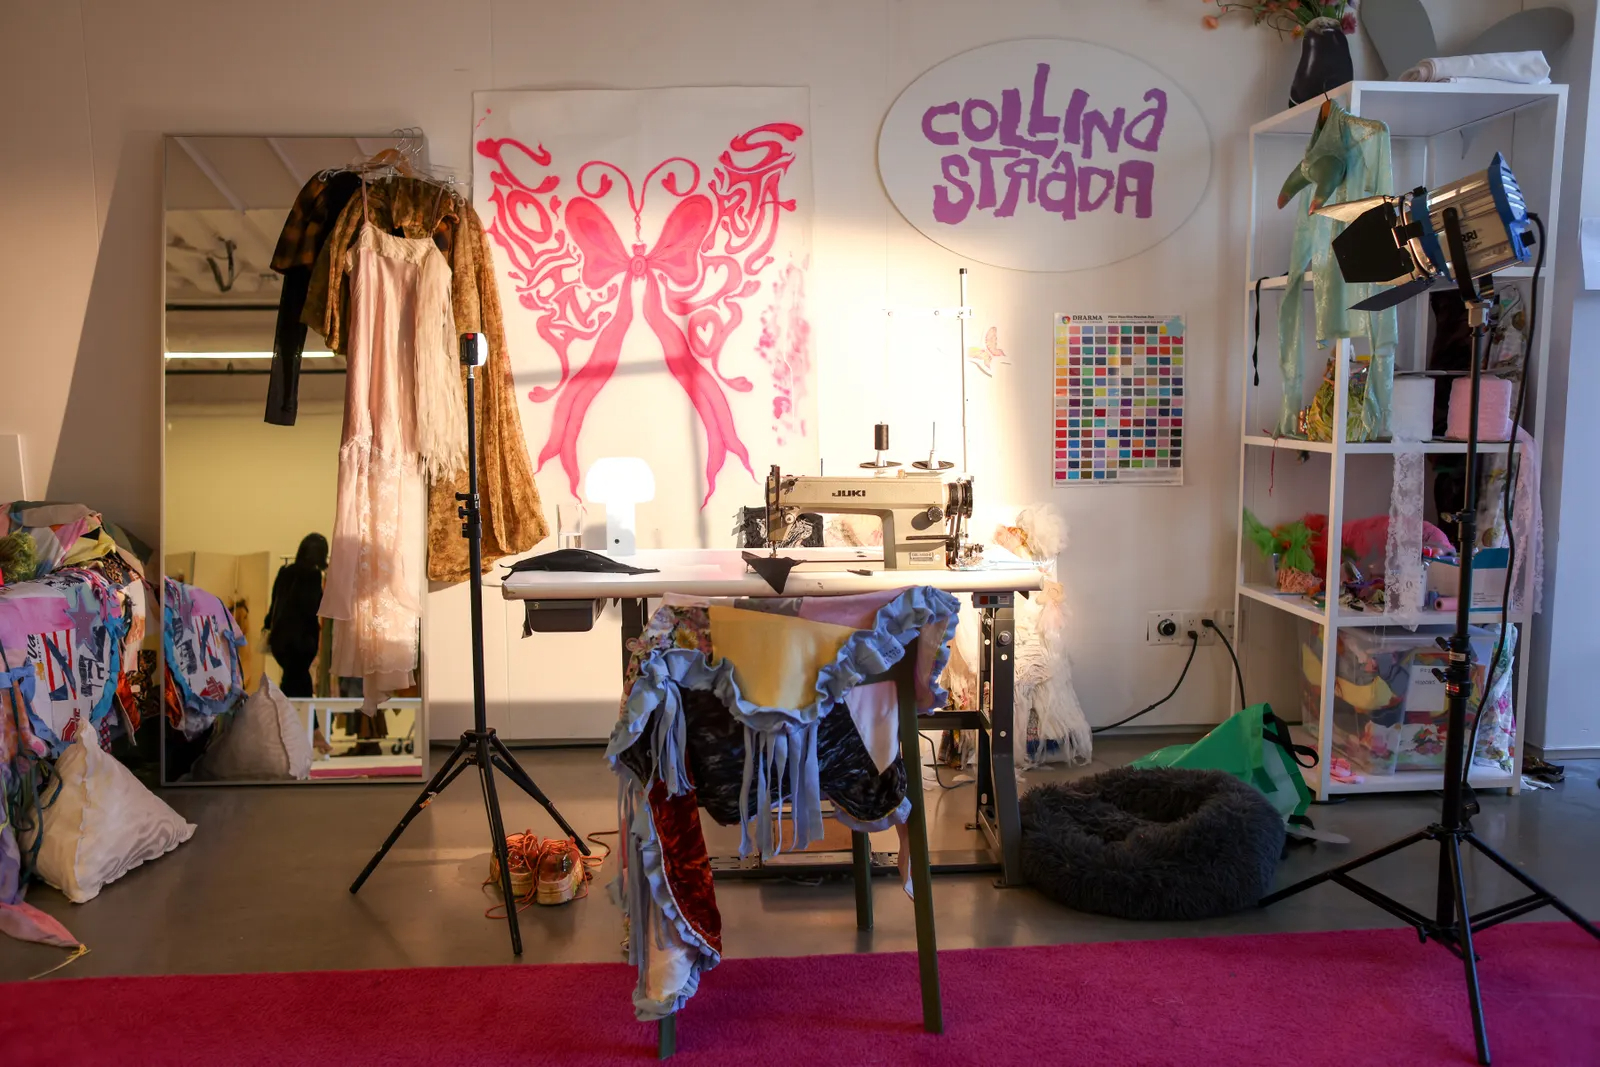 Inside the Collina Strada Studio